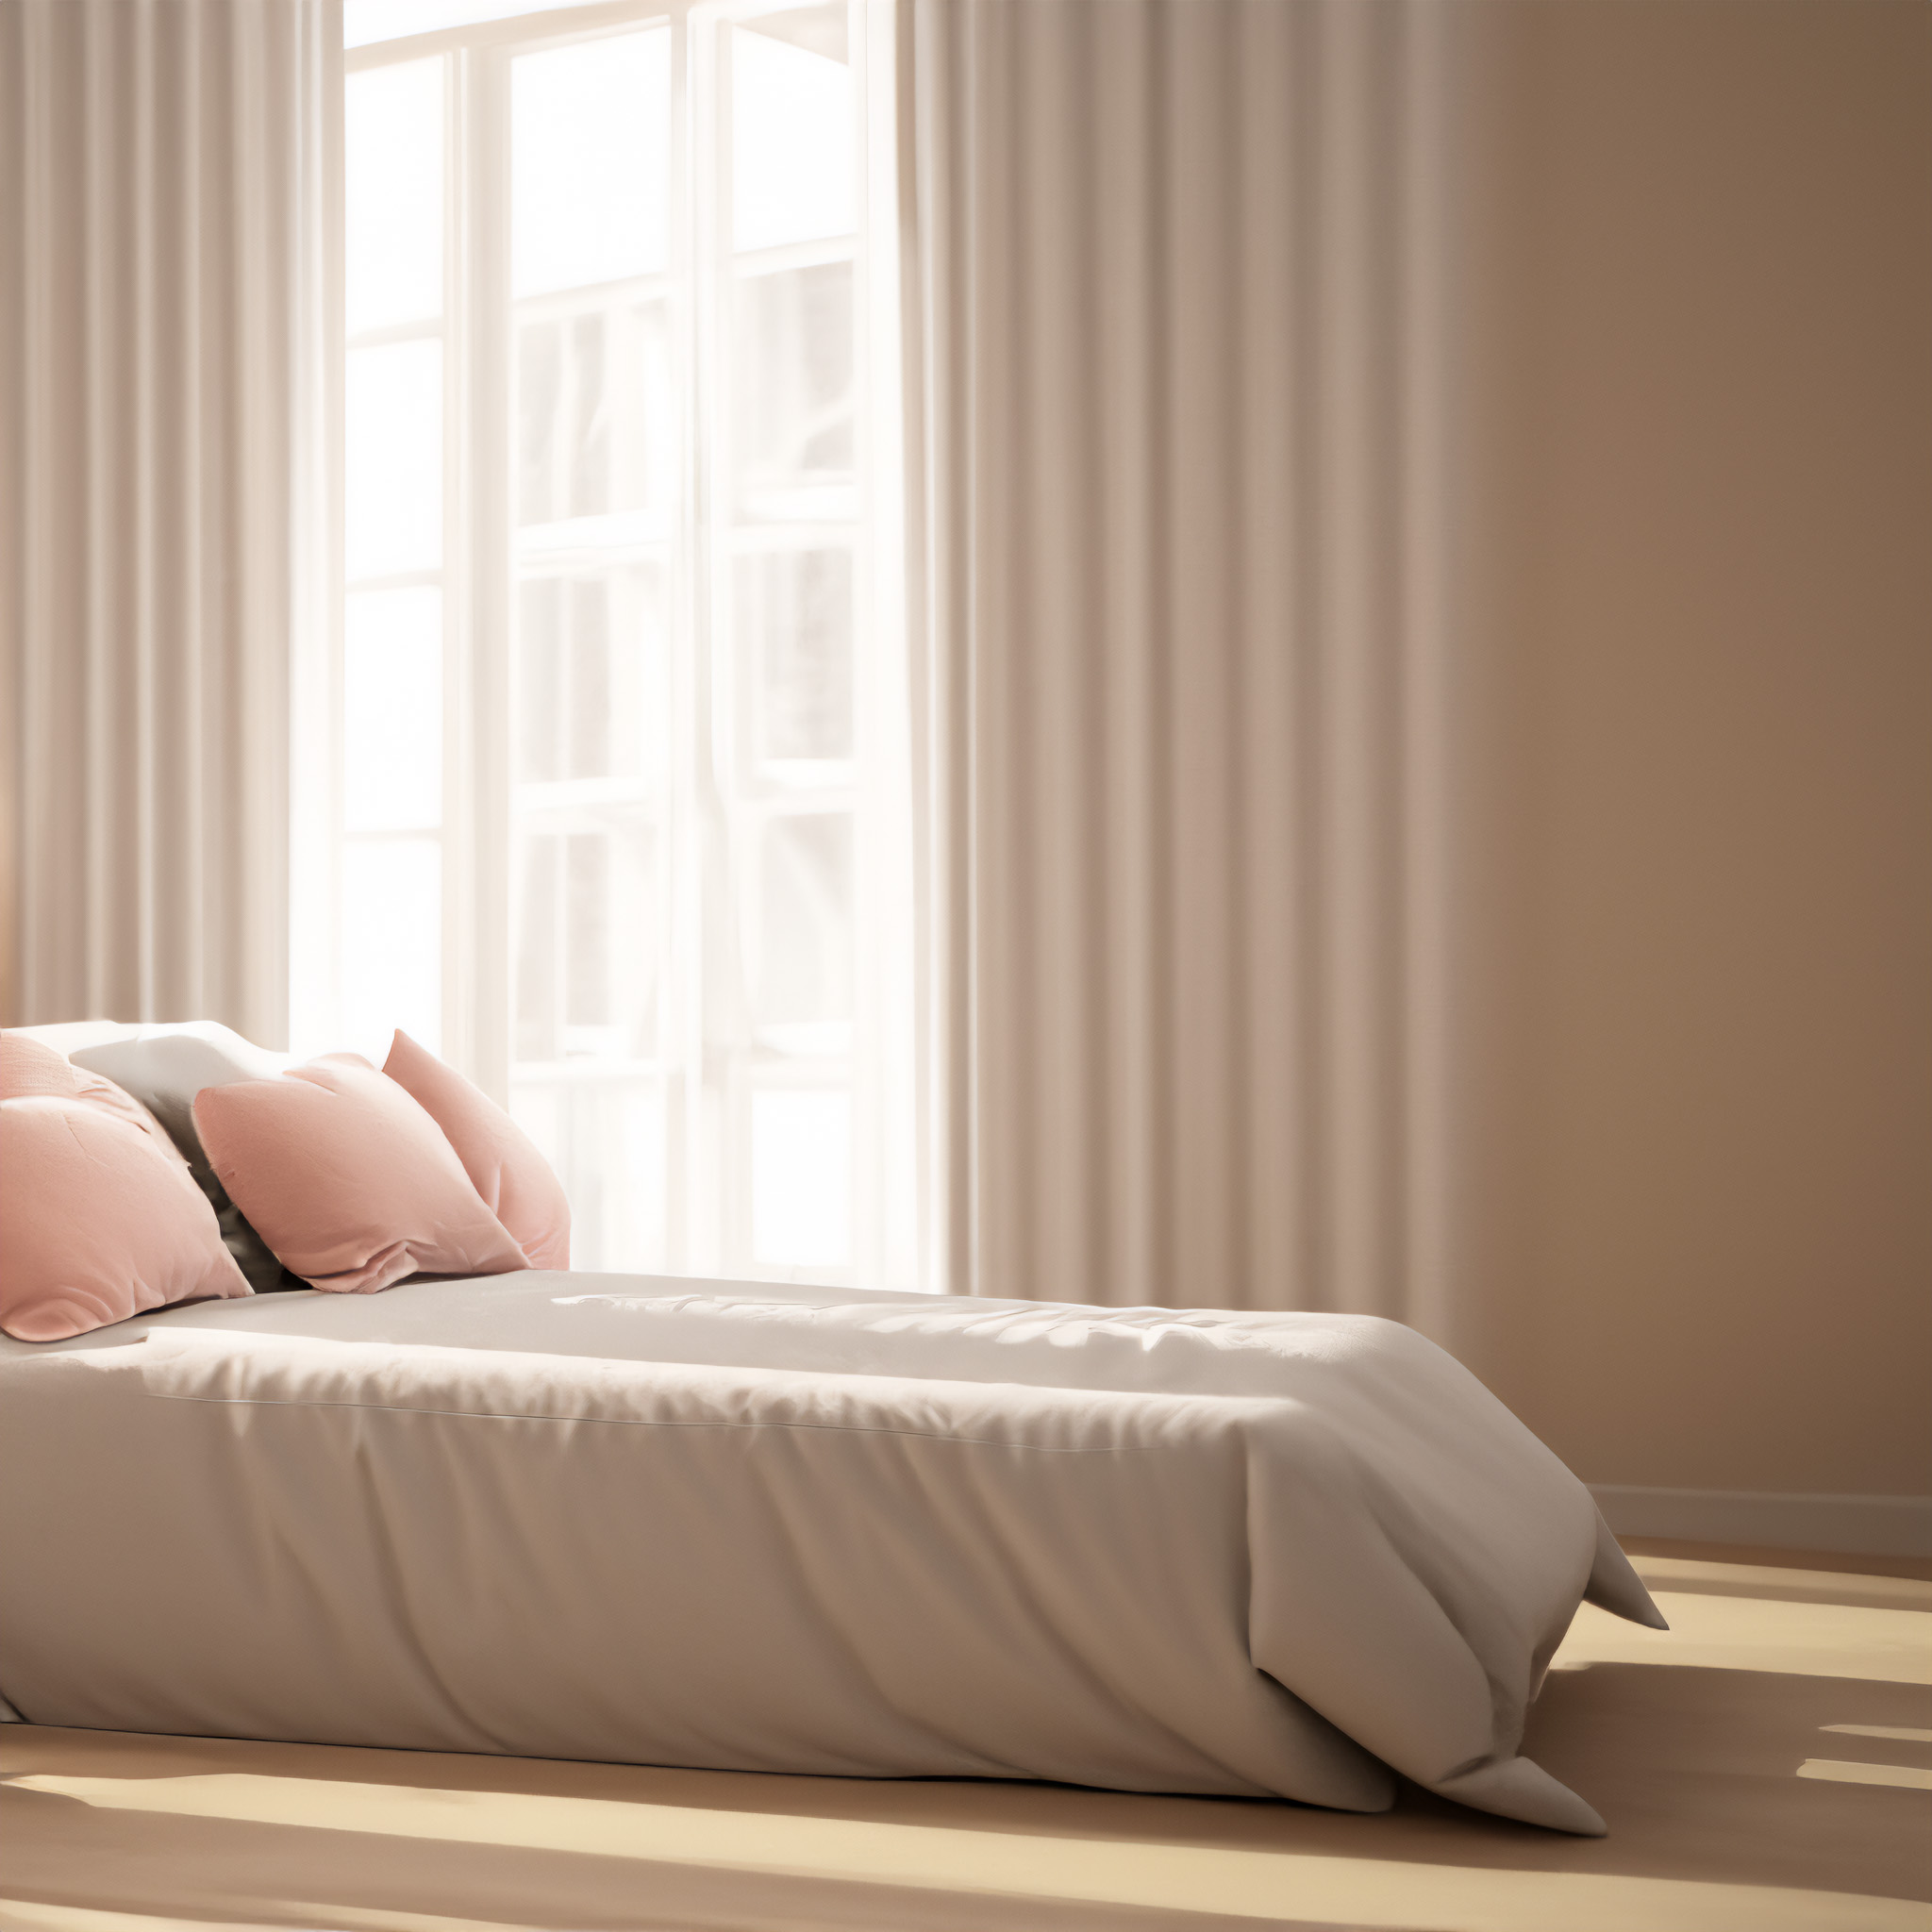 Feminine Peach & Pink | Bedroom Ideas · Minimal Luxury: How Minimalist Art Enhances this Upscale Look | Trends | Art Prints Vault